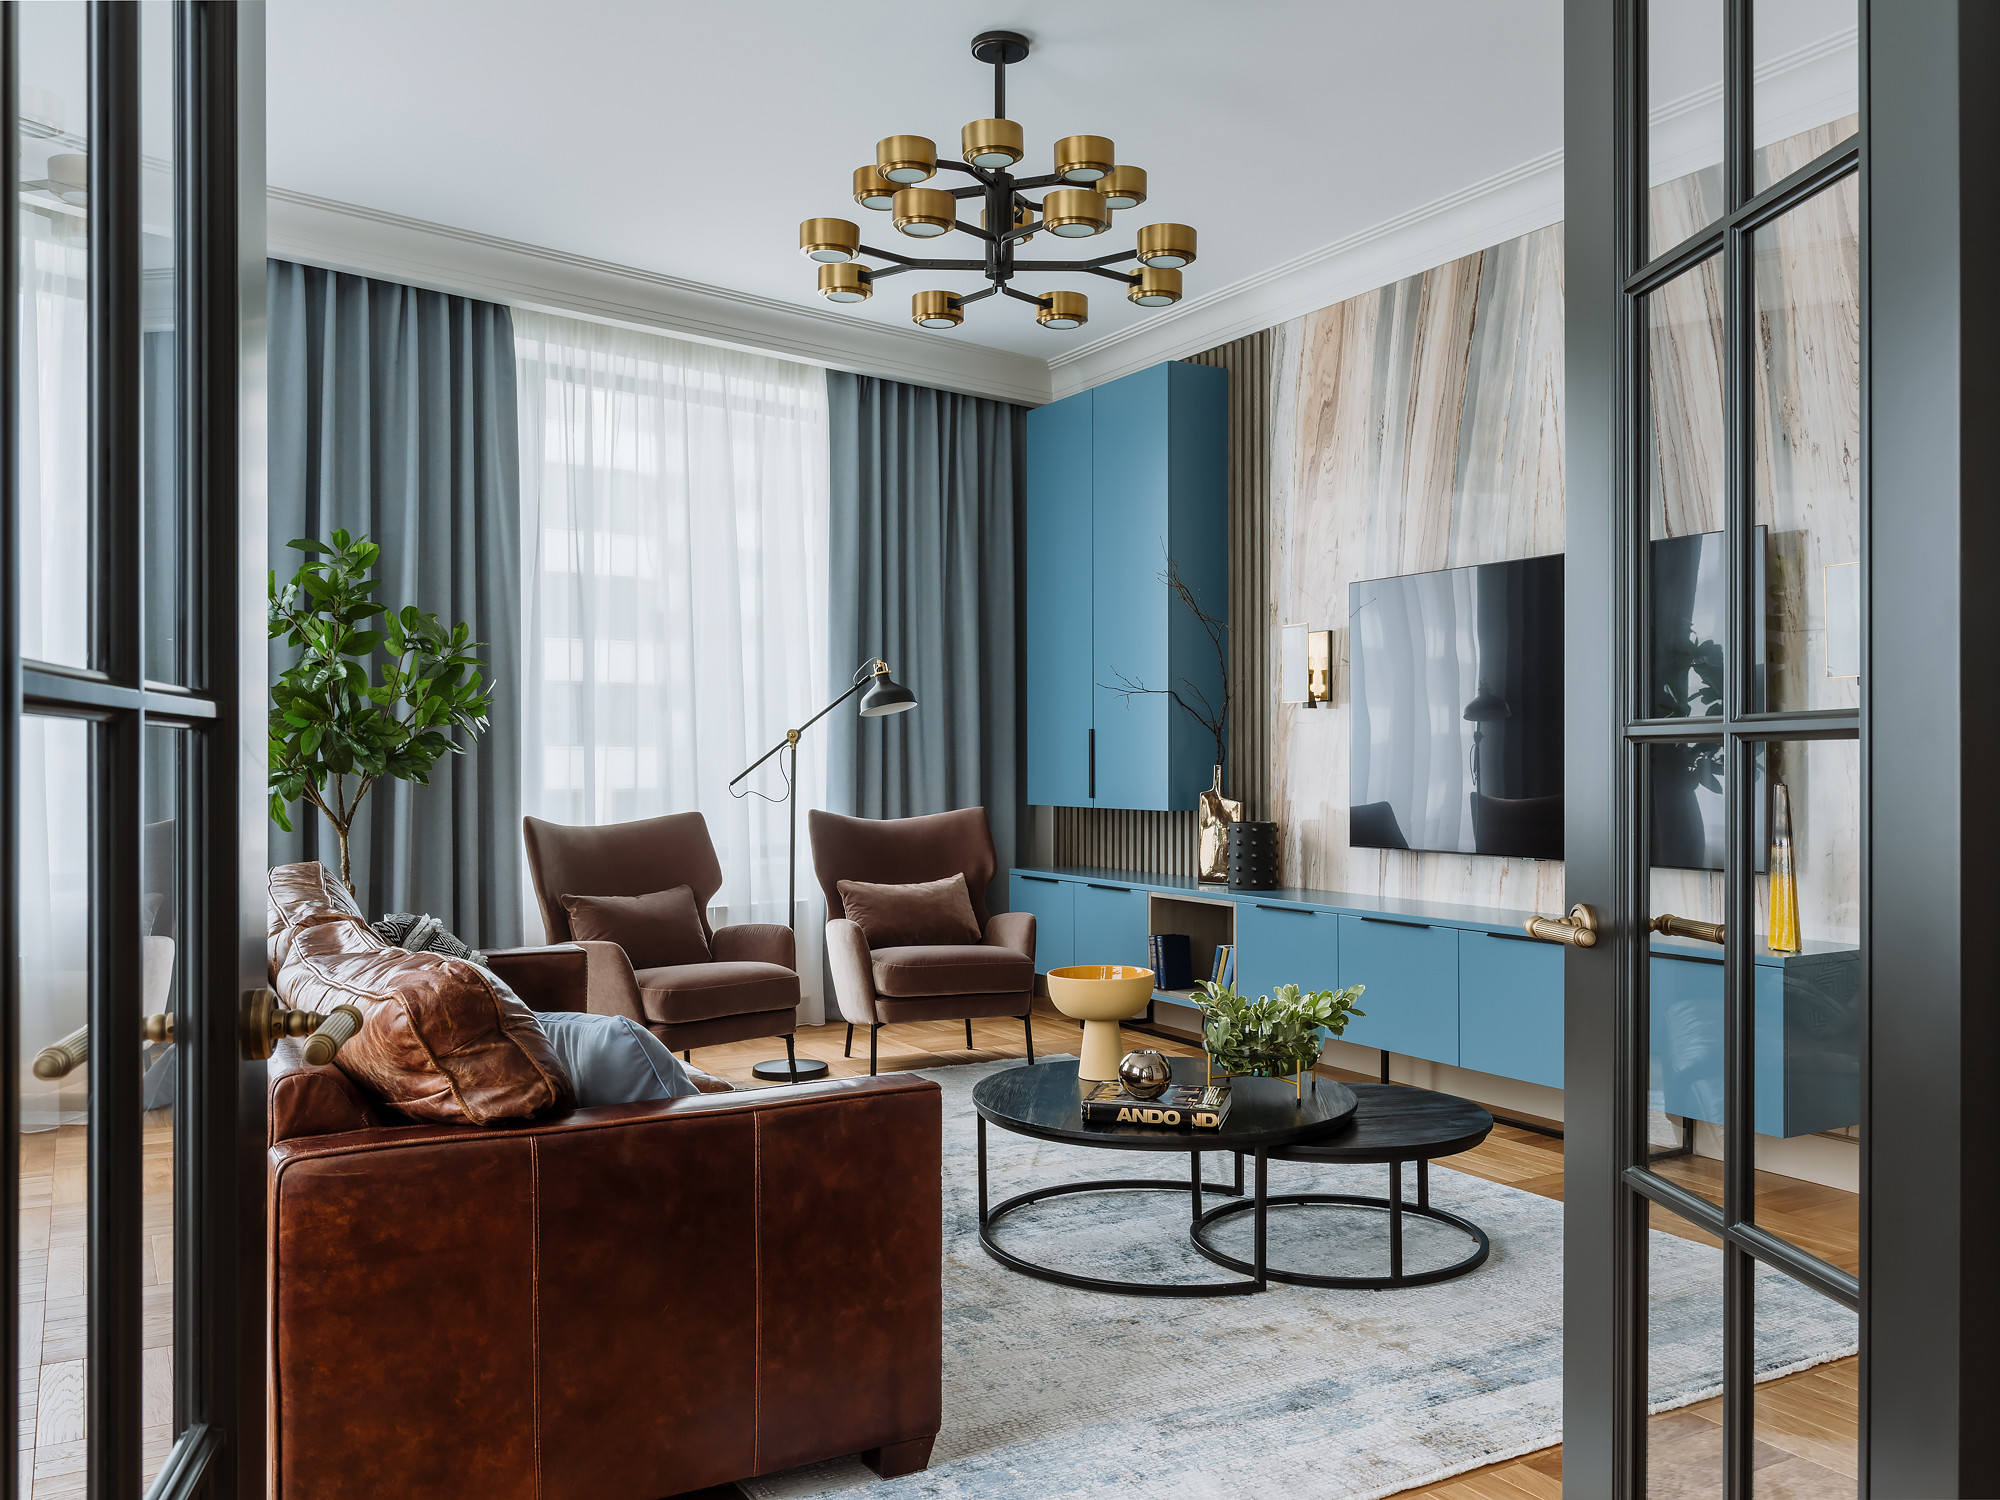 Дизайн зала в квартире — 200 фото самых красивых идей по выбору цвета, стиля, мебели и декора